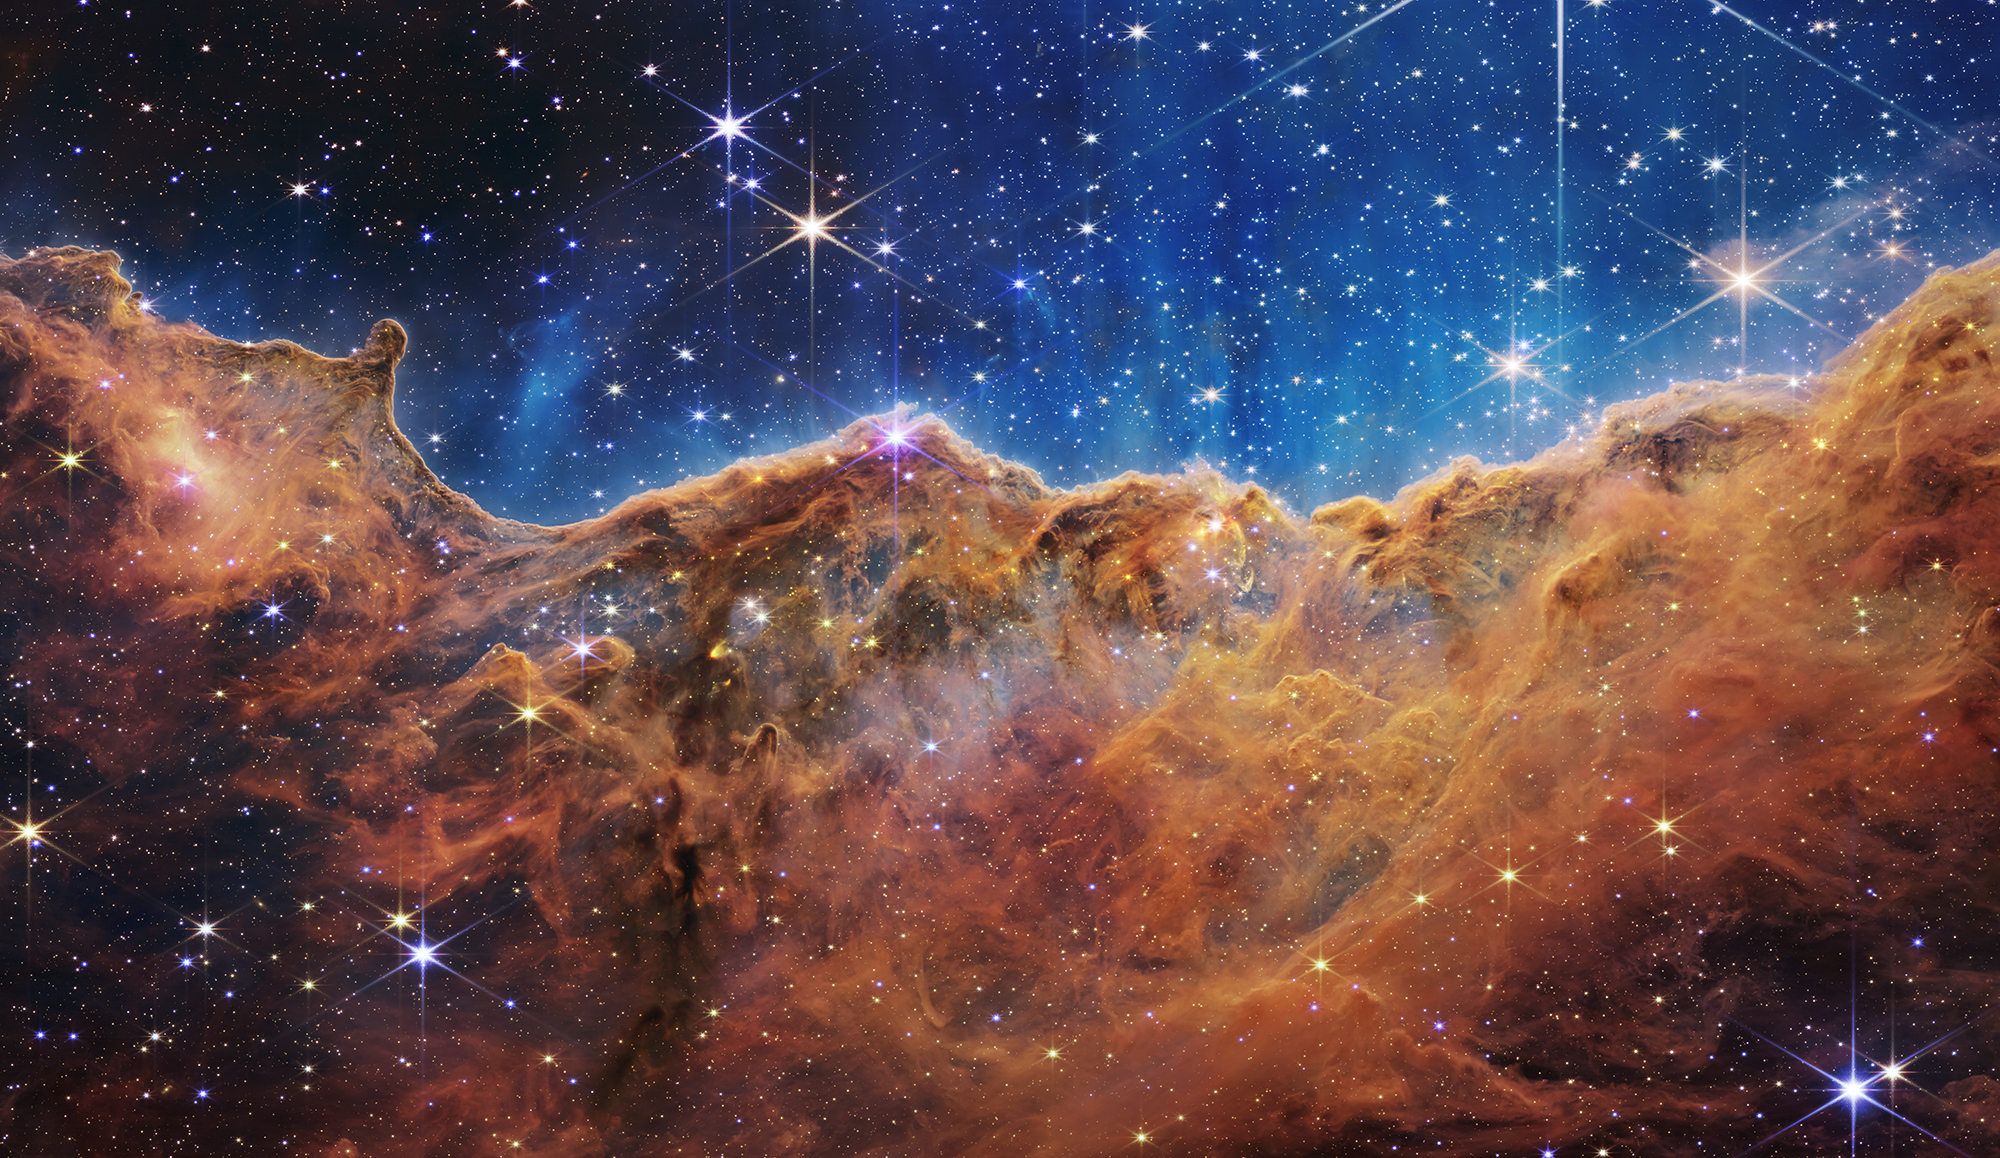 Kính thiên văn James Webb là một công trình phục vụ cho khoa học đầy tâm huyết và nỗ lực. Hãy ngắm nhìn những hình ảnh tuyệt đẹp về kính thiên văn này để thấy được những bí mật, cảm nhận sự to lớn của vũ trụ qua những tấm hình tuyệt vời này.